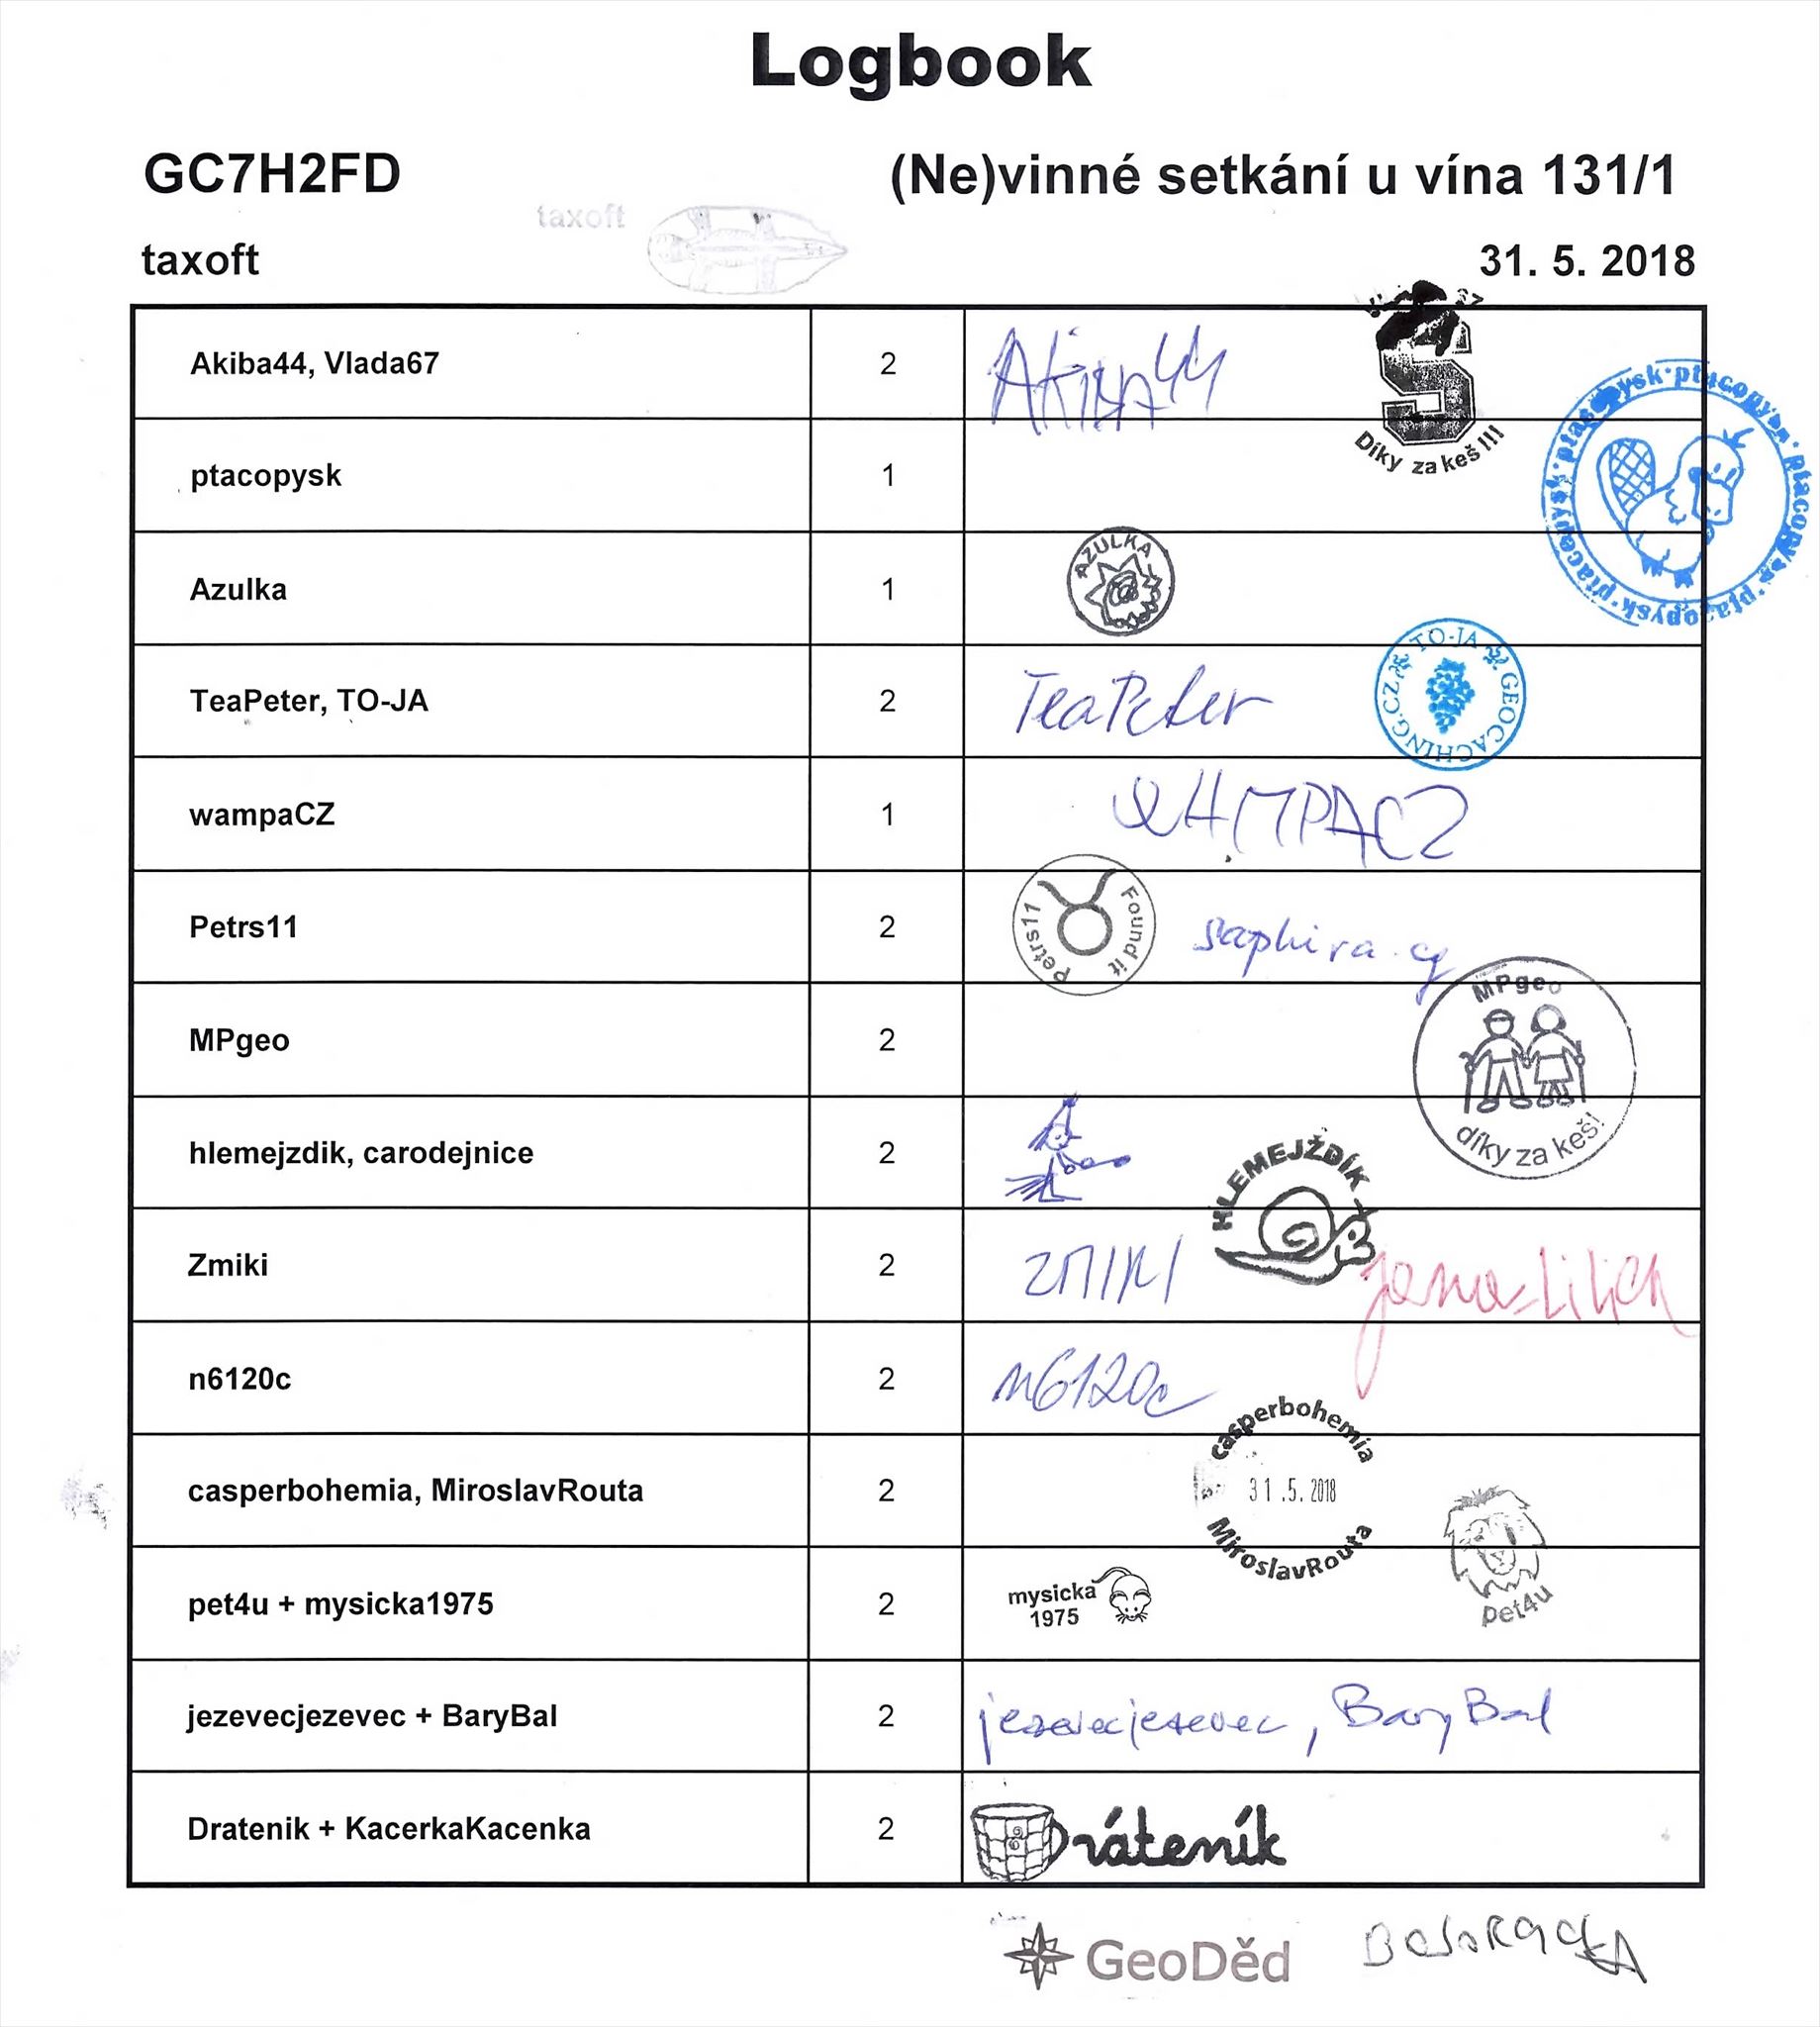 GC7H2FD - (Ne)vinné setkání u vína 131/1 - logbook